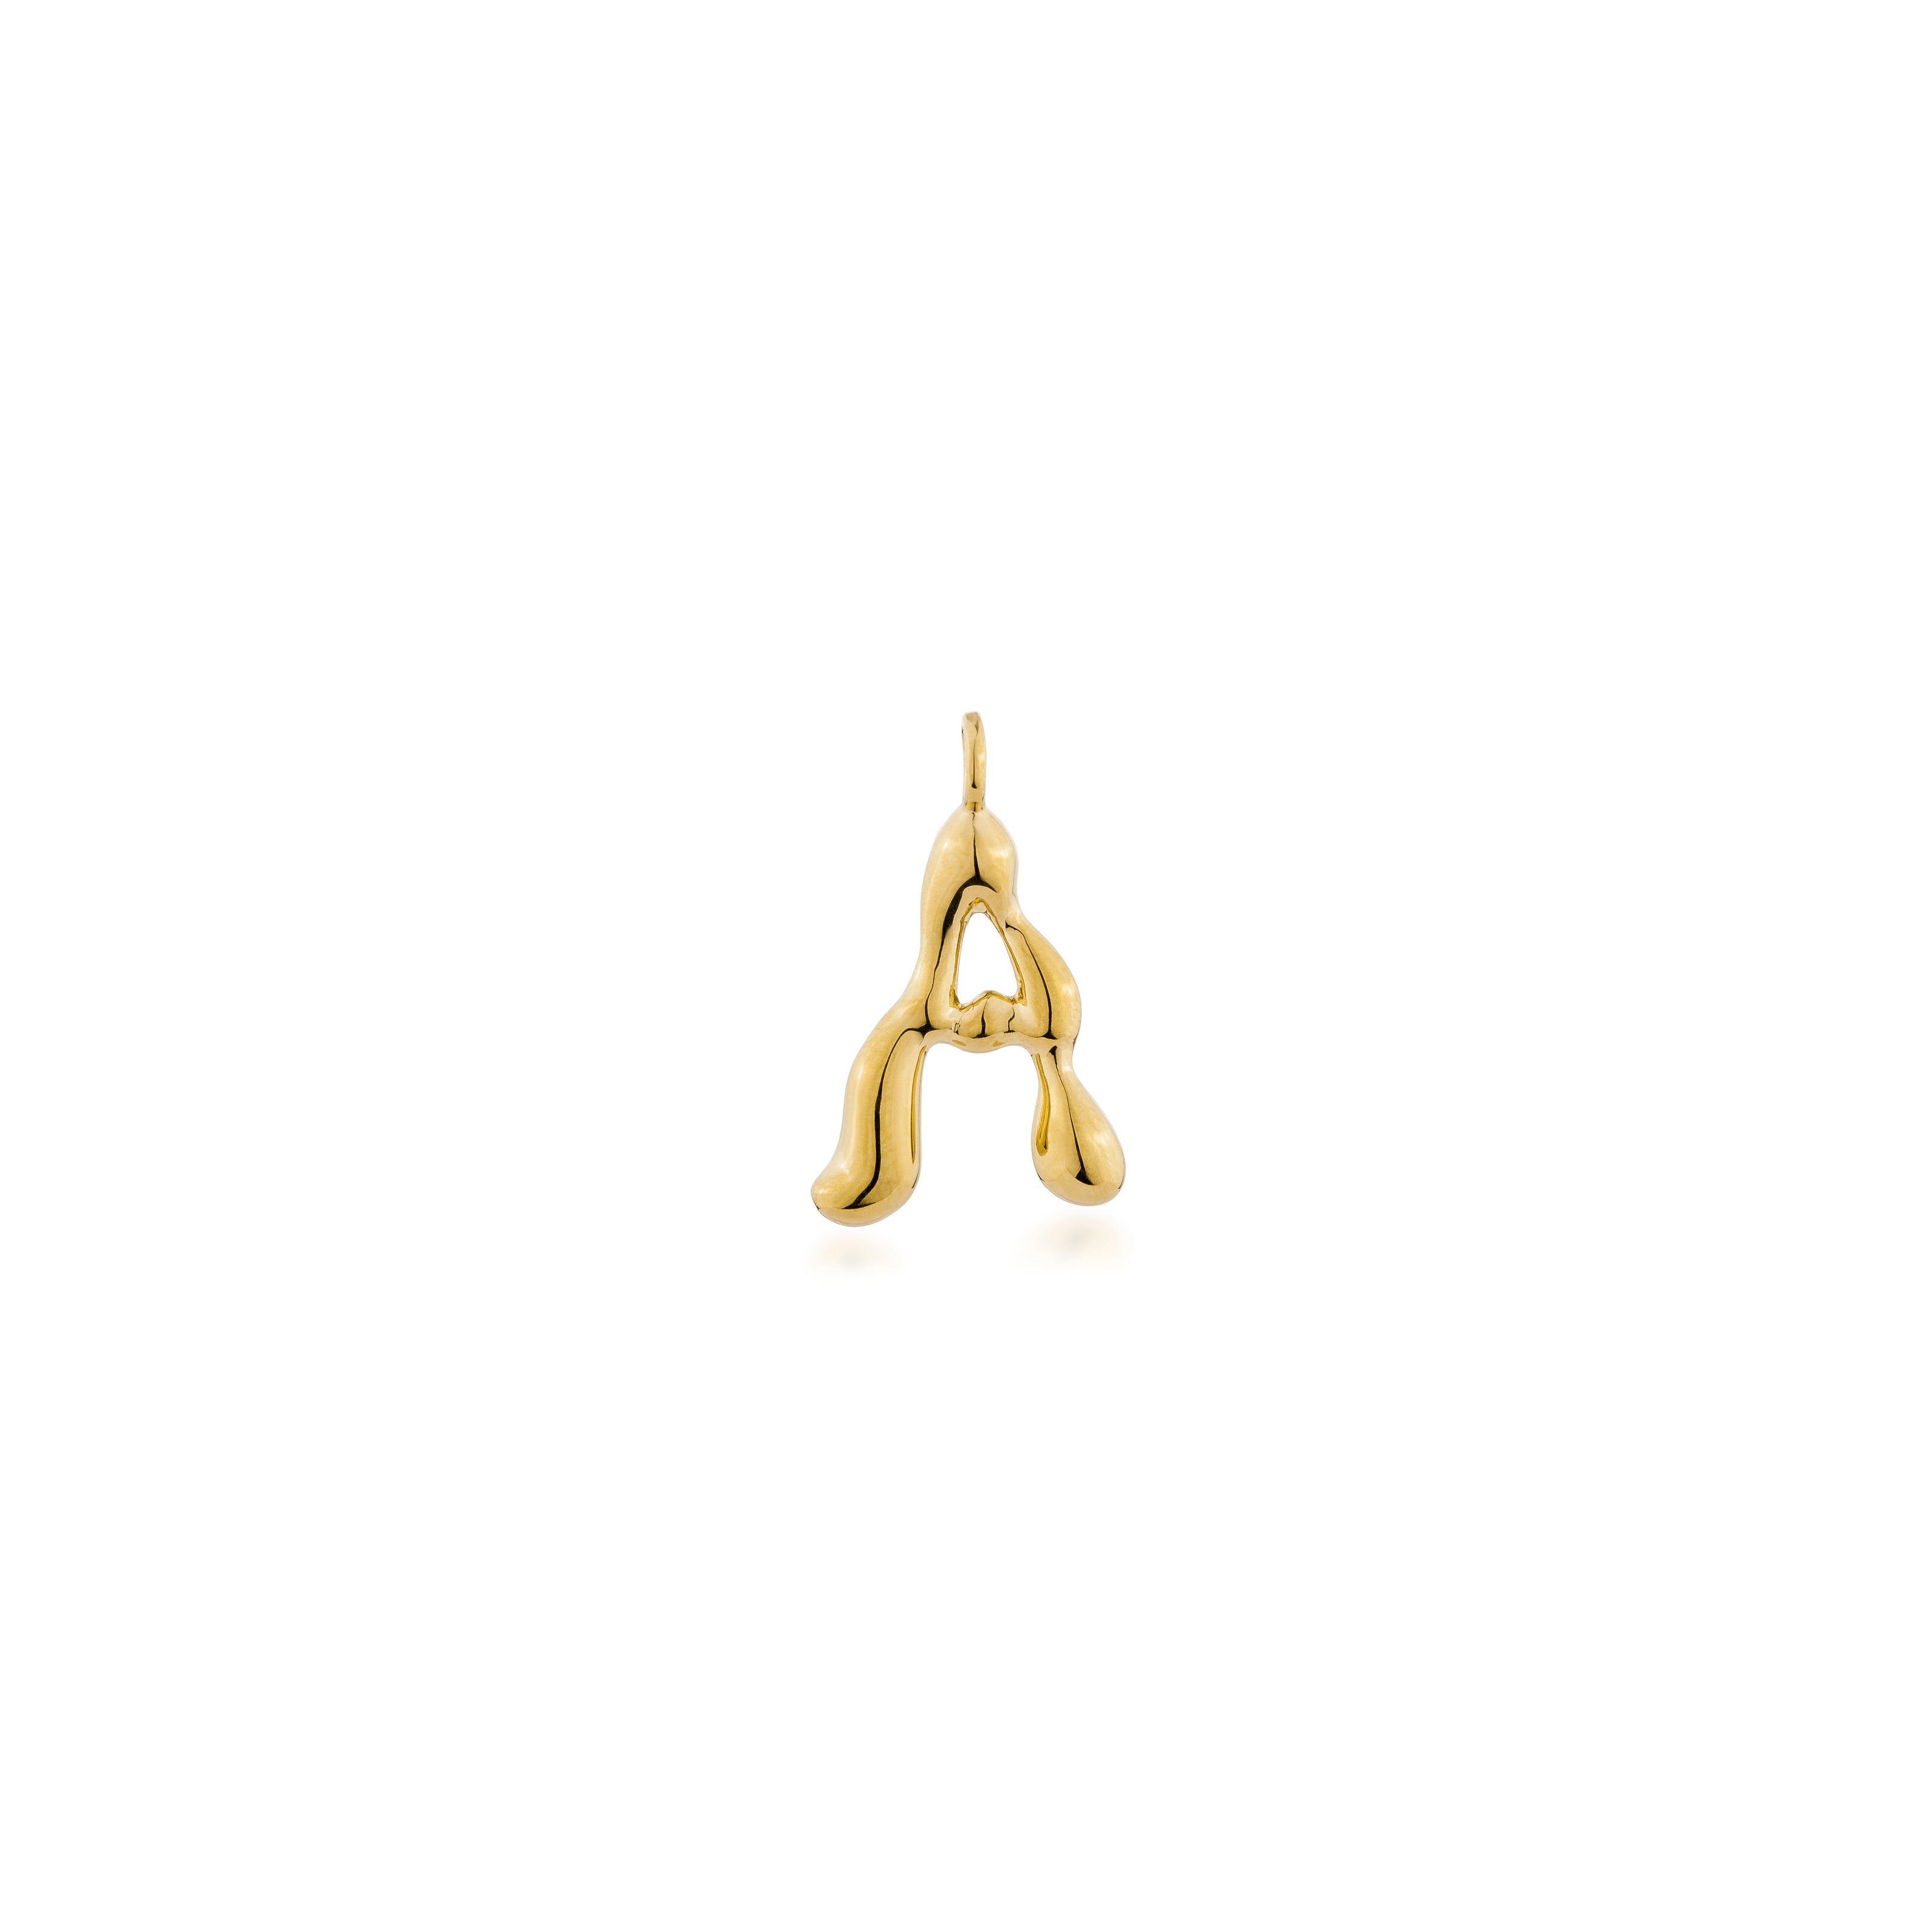 A Alphabet 1 cm.